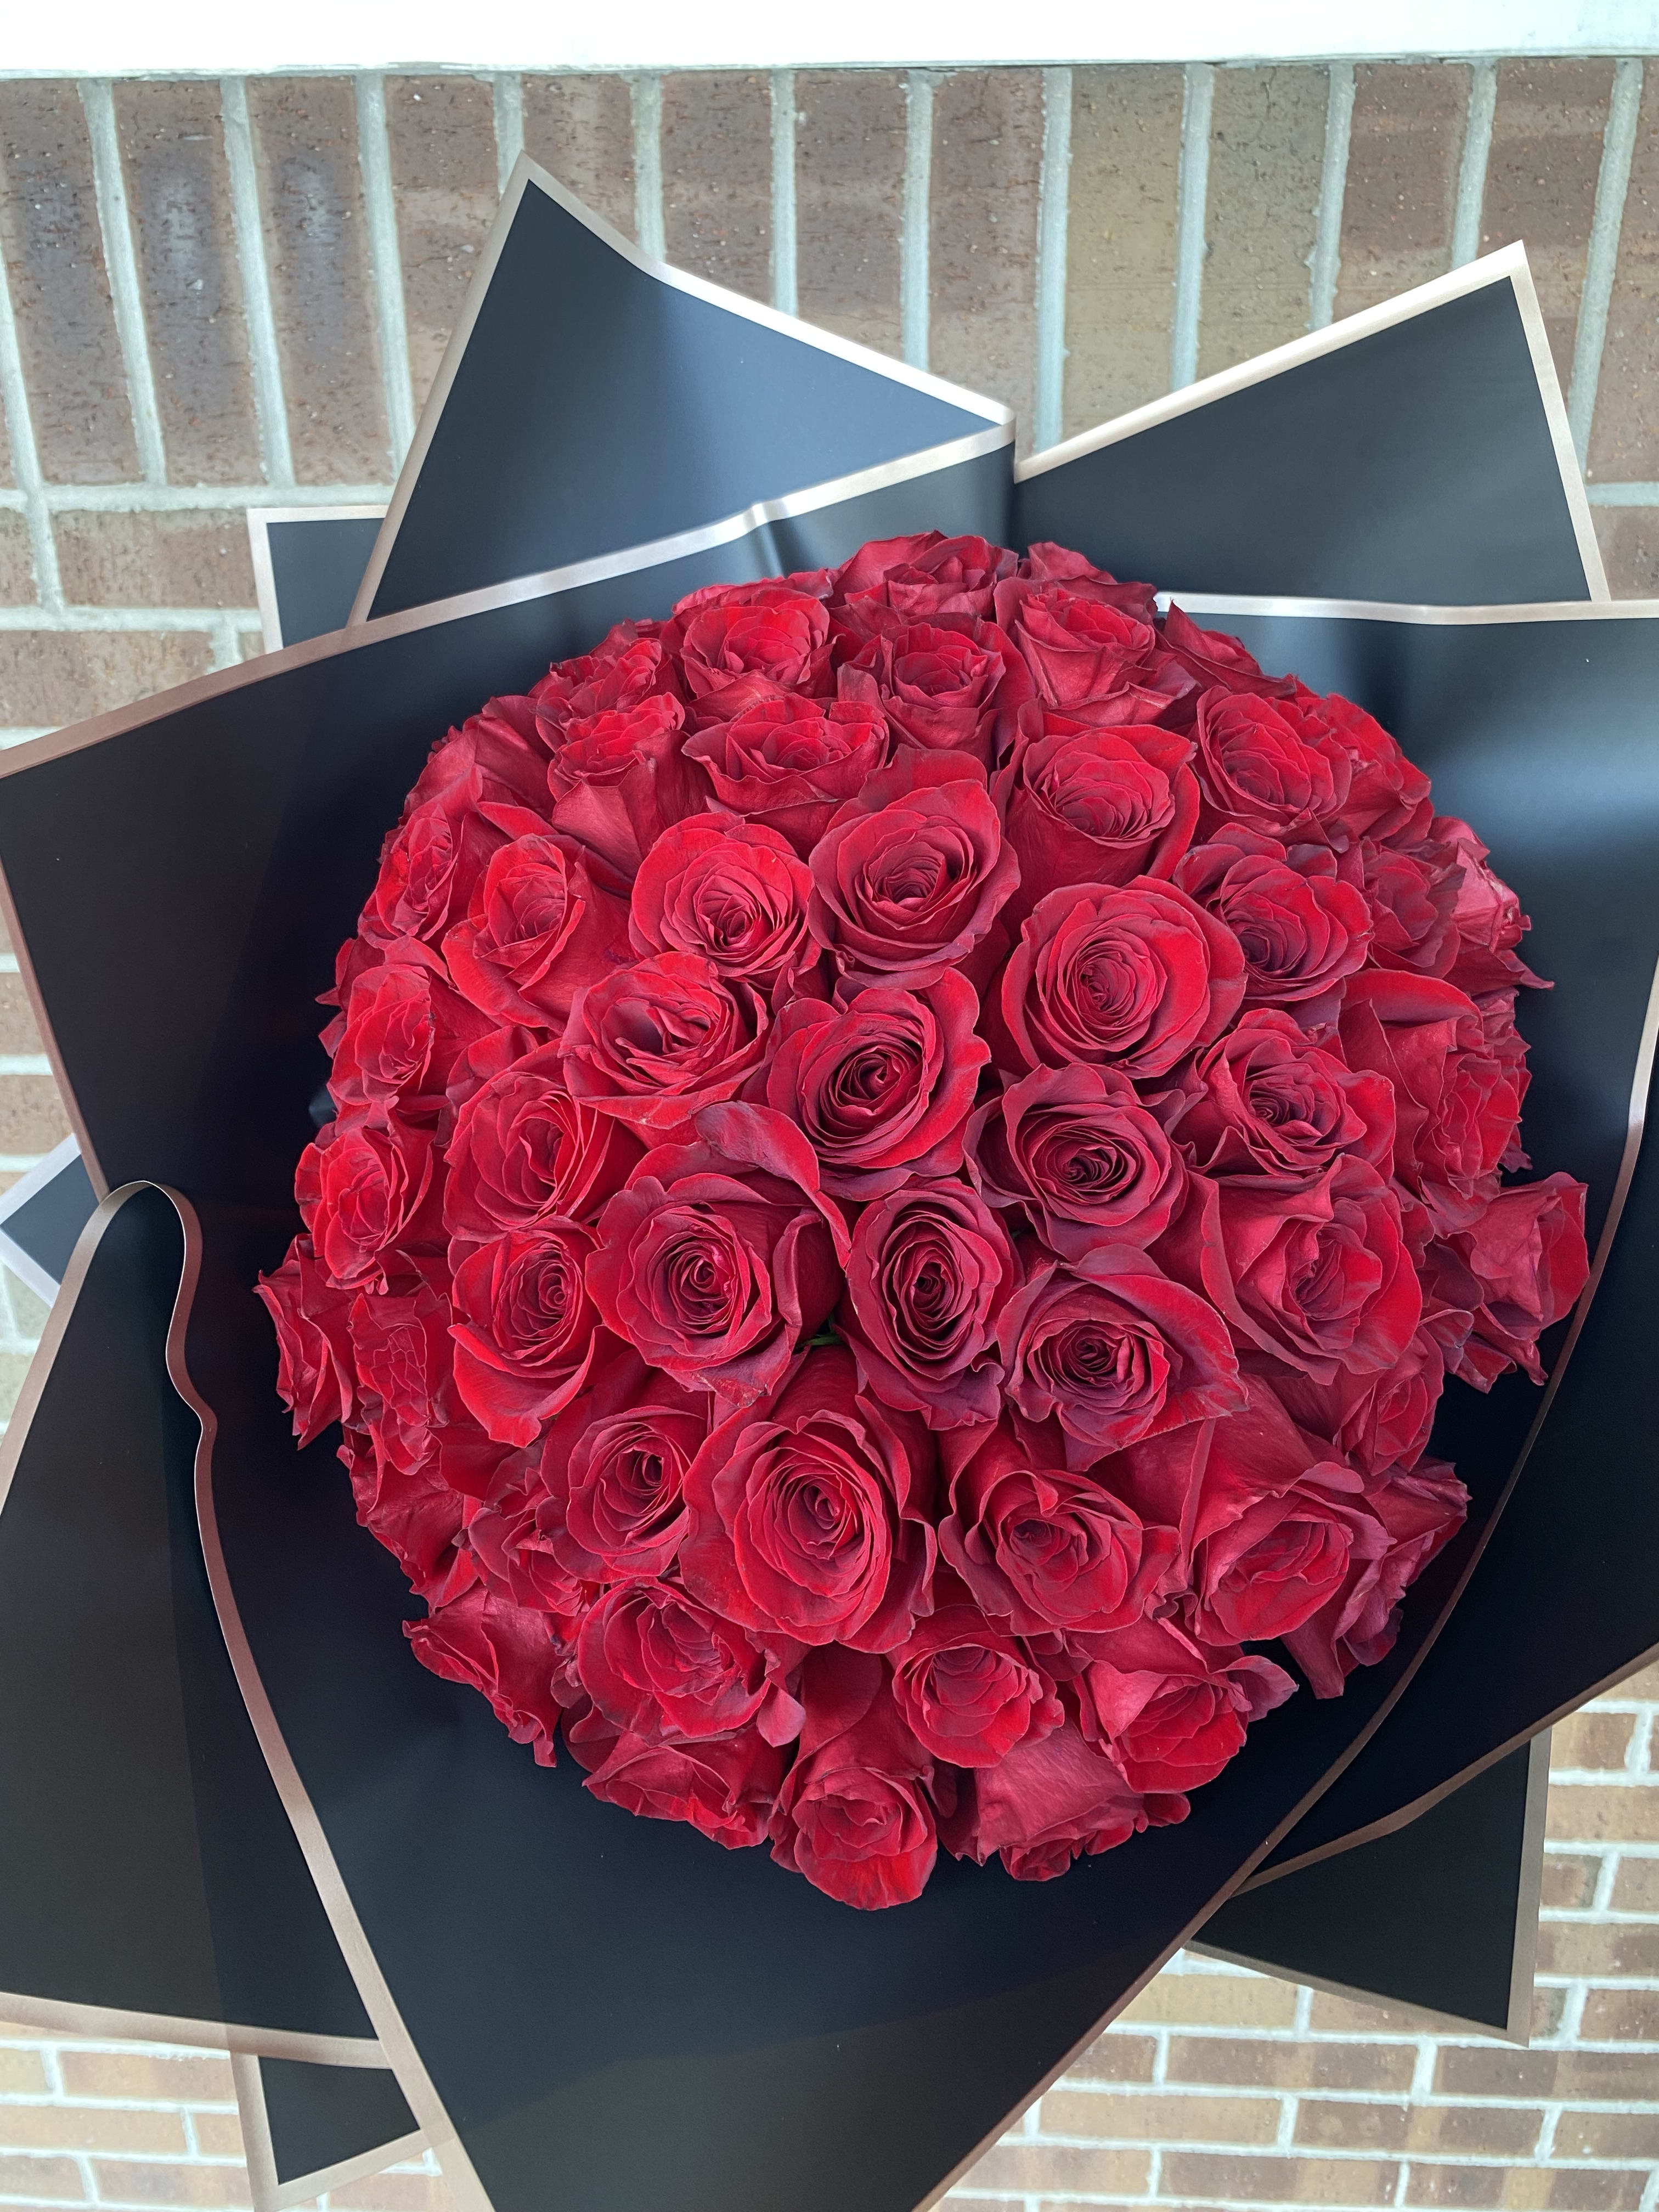 5 Dozen Red Rose Bouquet in Grand Prairie, TX